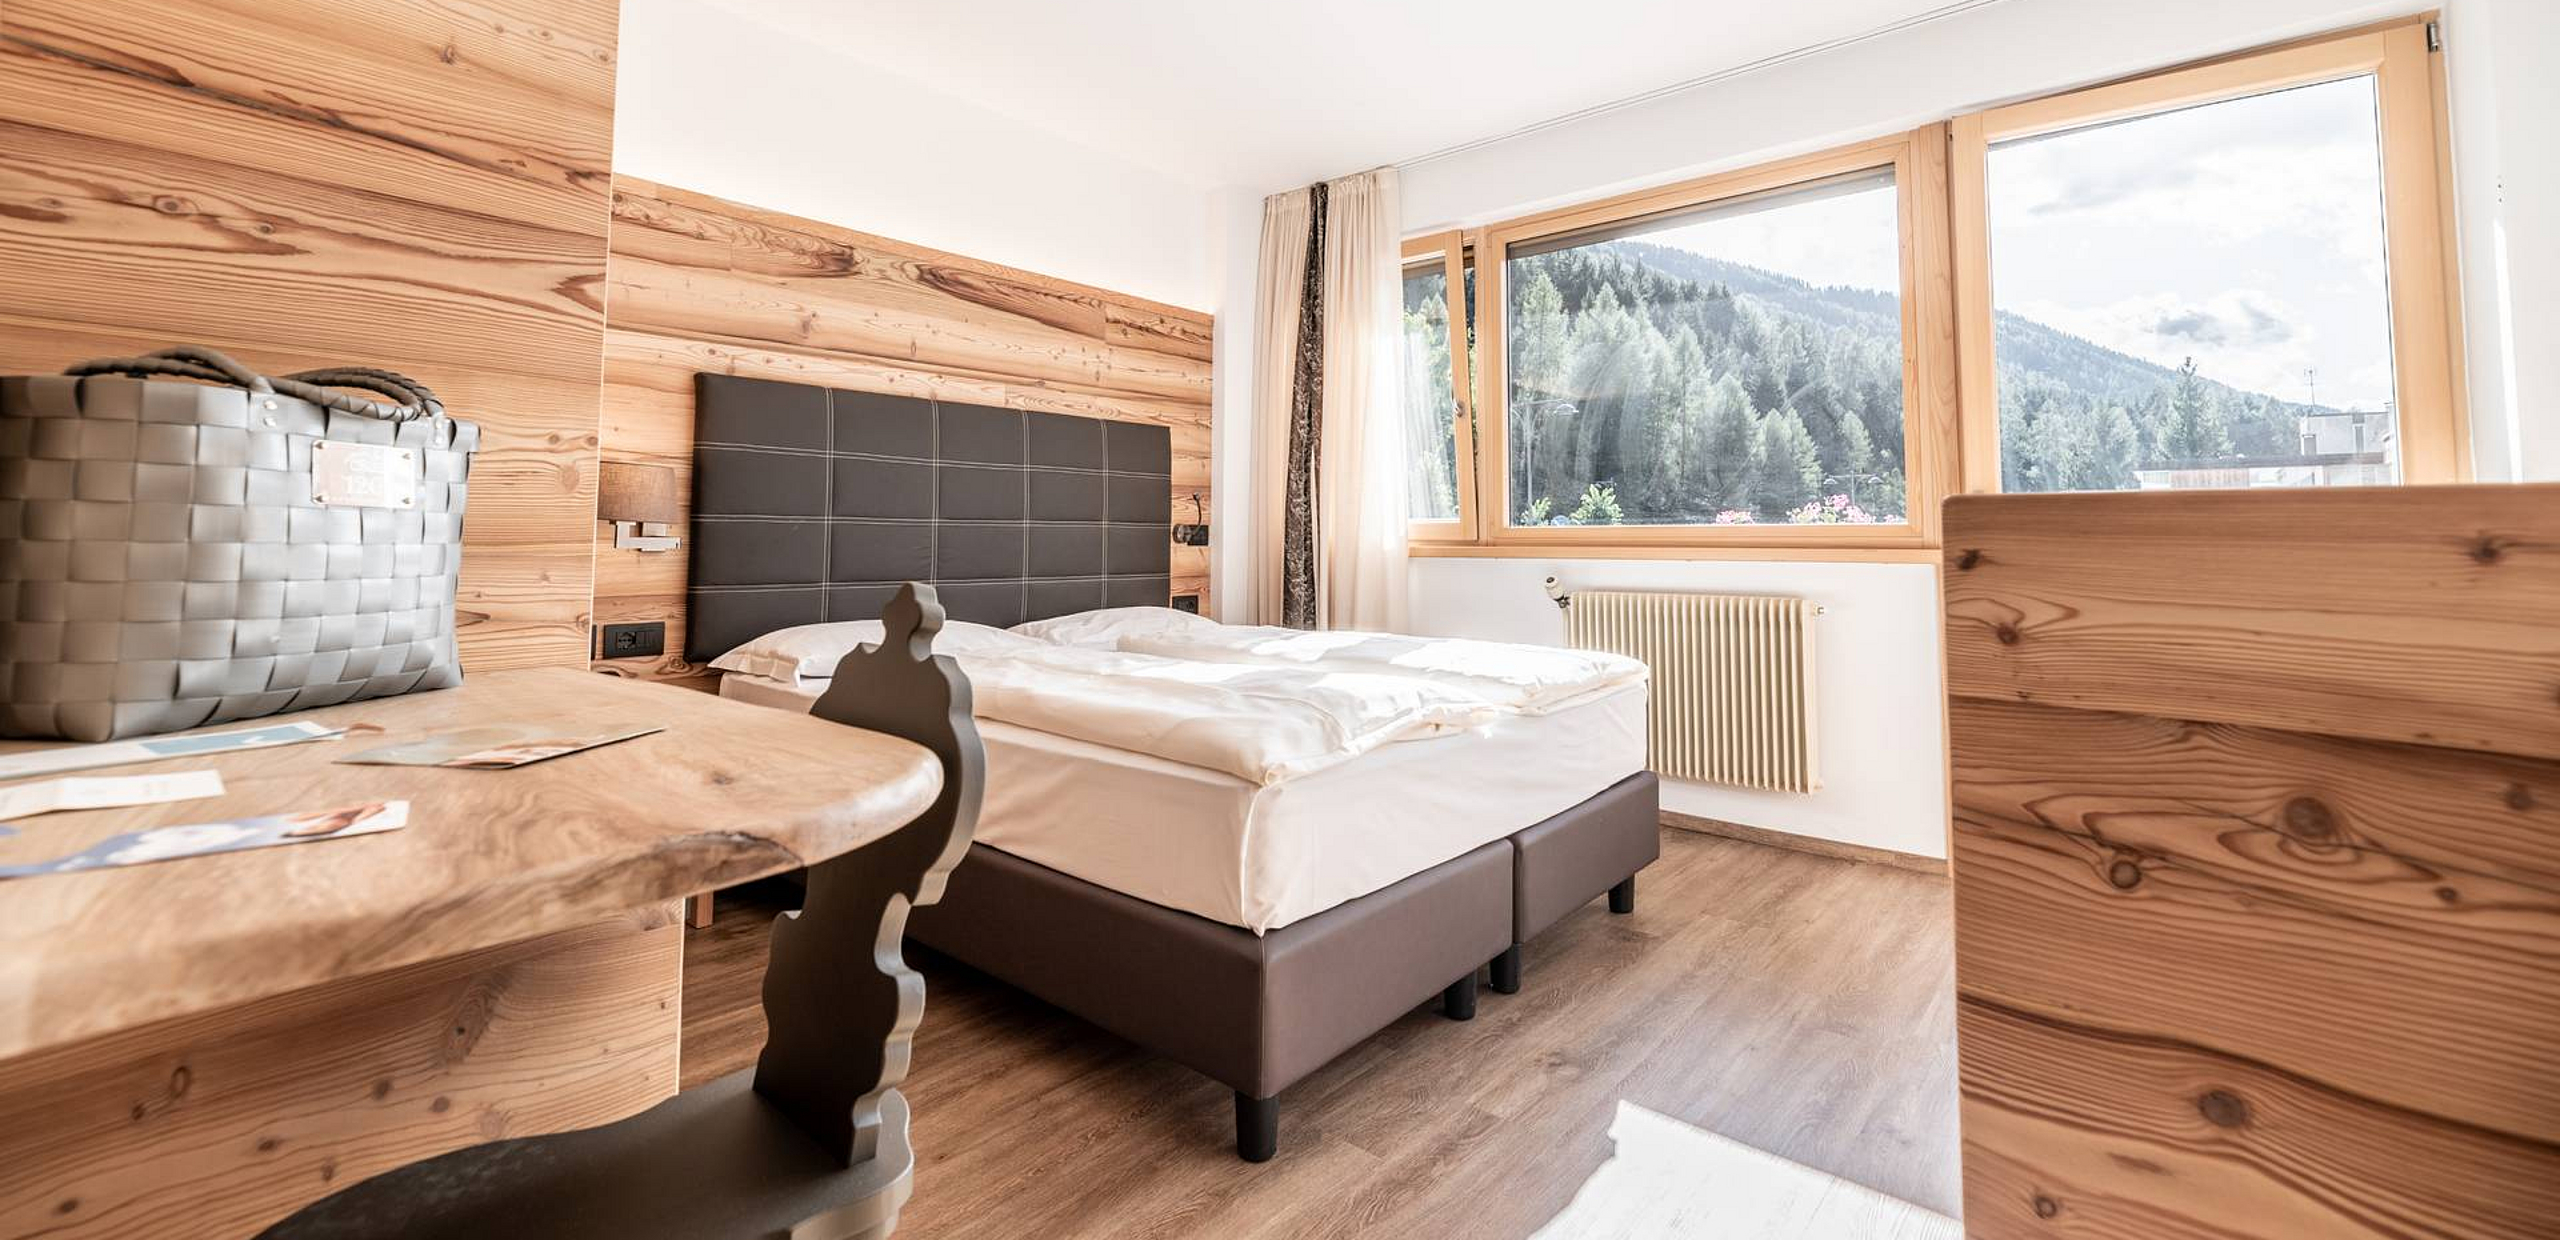 Double room with balcony, Mezzana, Trentino